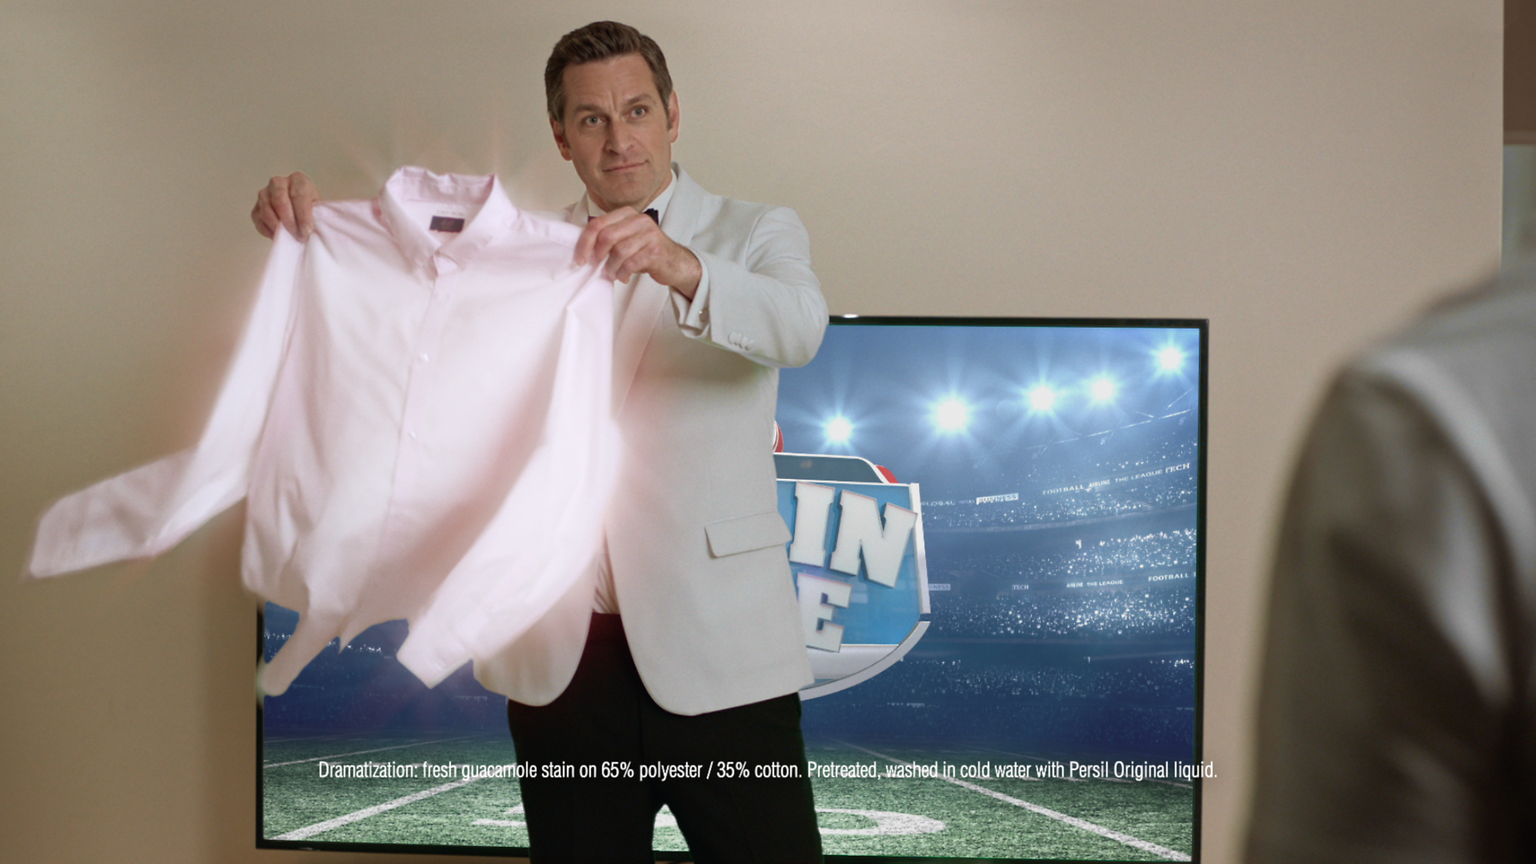 
Zum dritten Mal in Folge ist Henkel mit Persil® ProClean® mit einem TV-Spot beim Super Bowl LII® dabei.